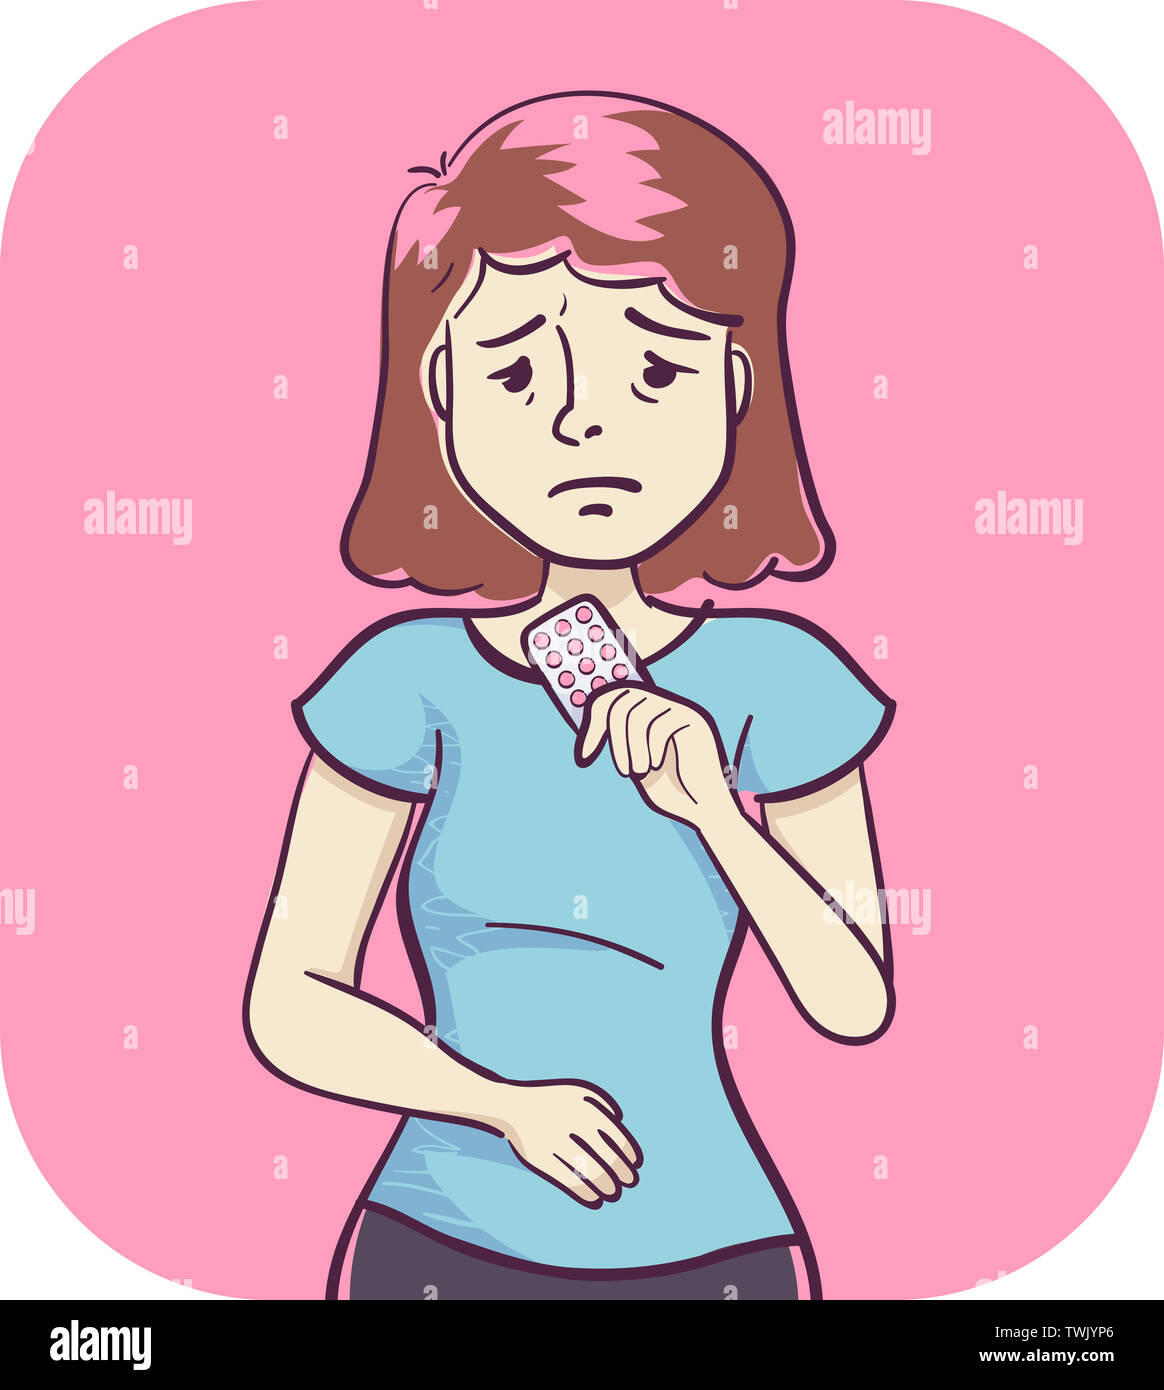 Ilustración de una chica mirando un paquete de píldoras anticonceptivas que  ella está tomando para problemas menstruales Fotografía de stock - Alamy